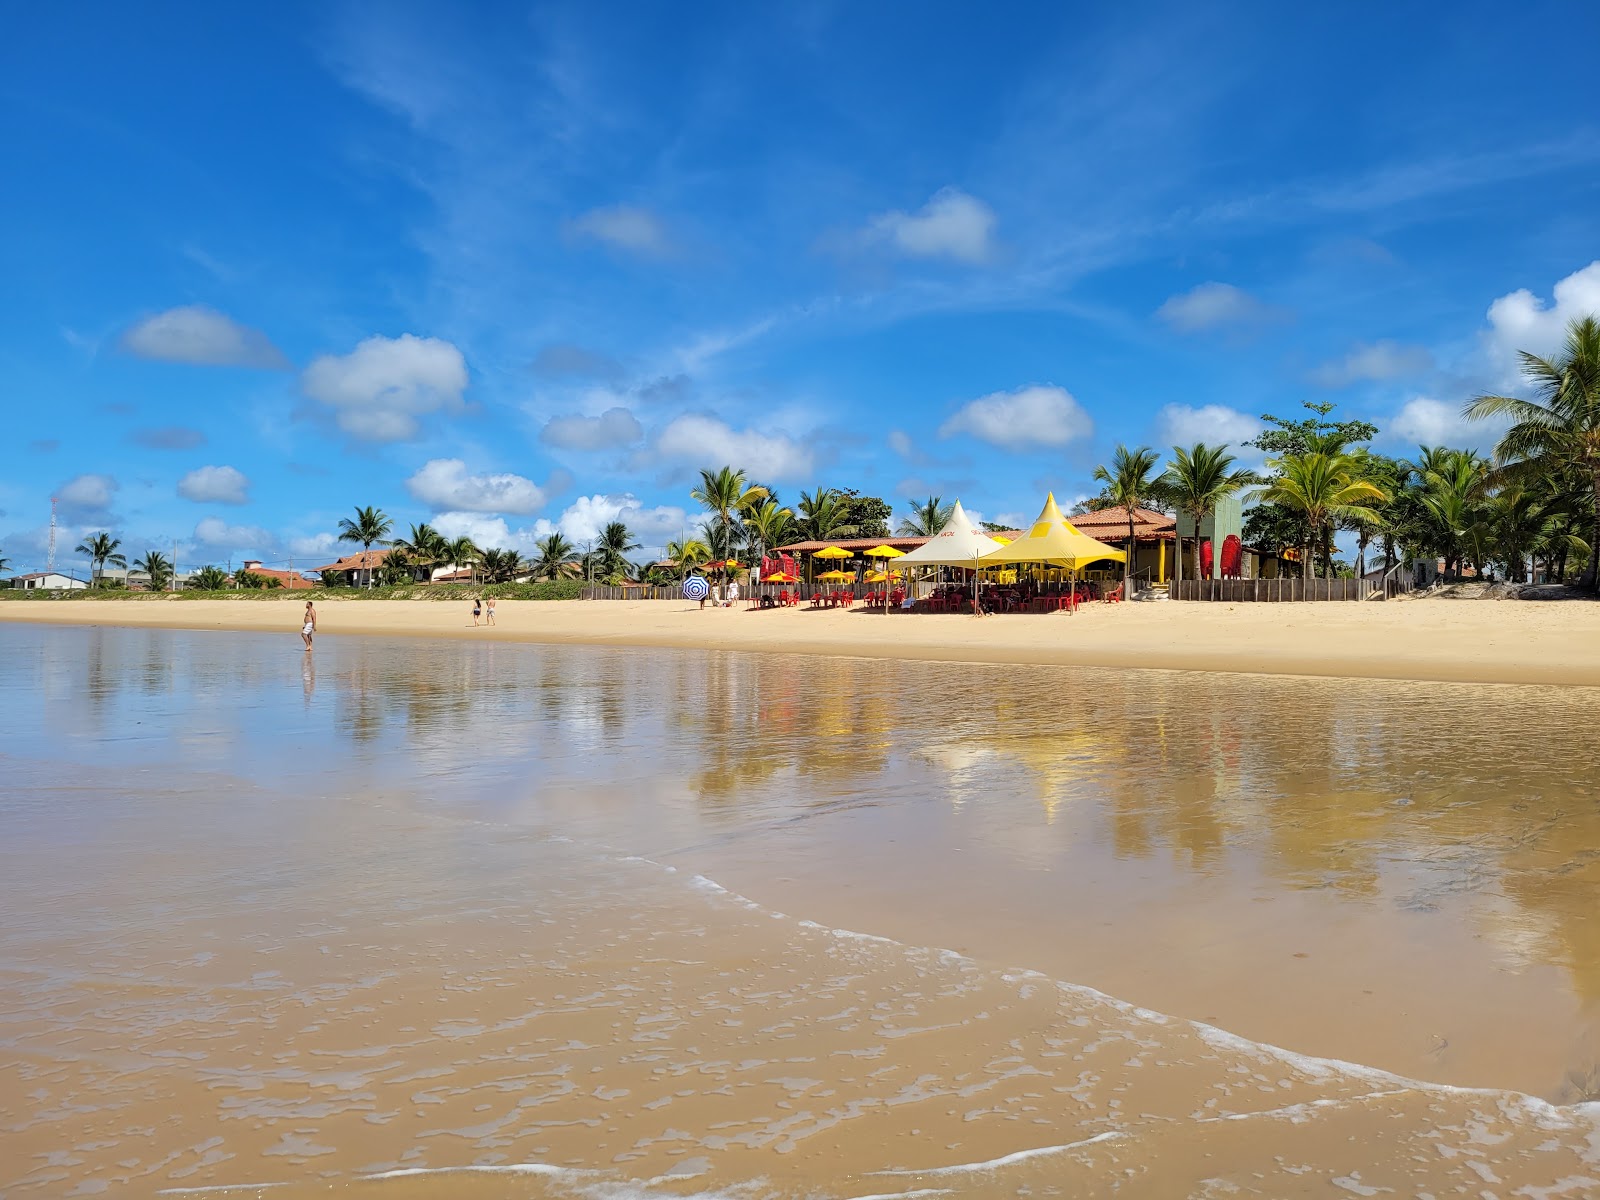 Farol Alcobaça Plajı'in fotoğrafı geniş plaj ile birlikte